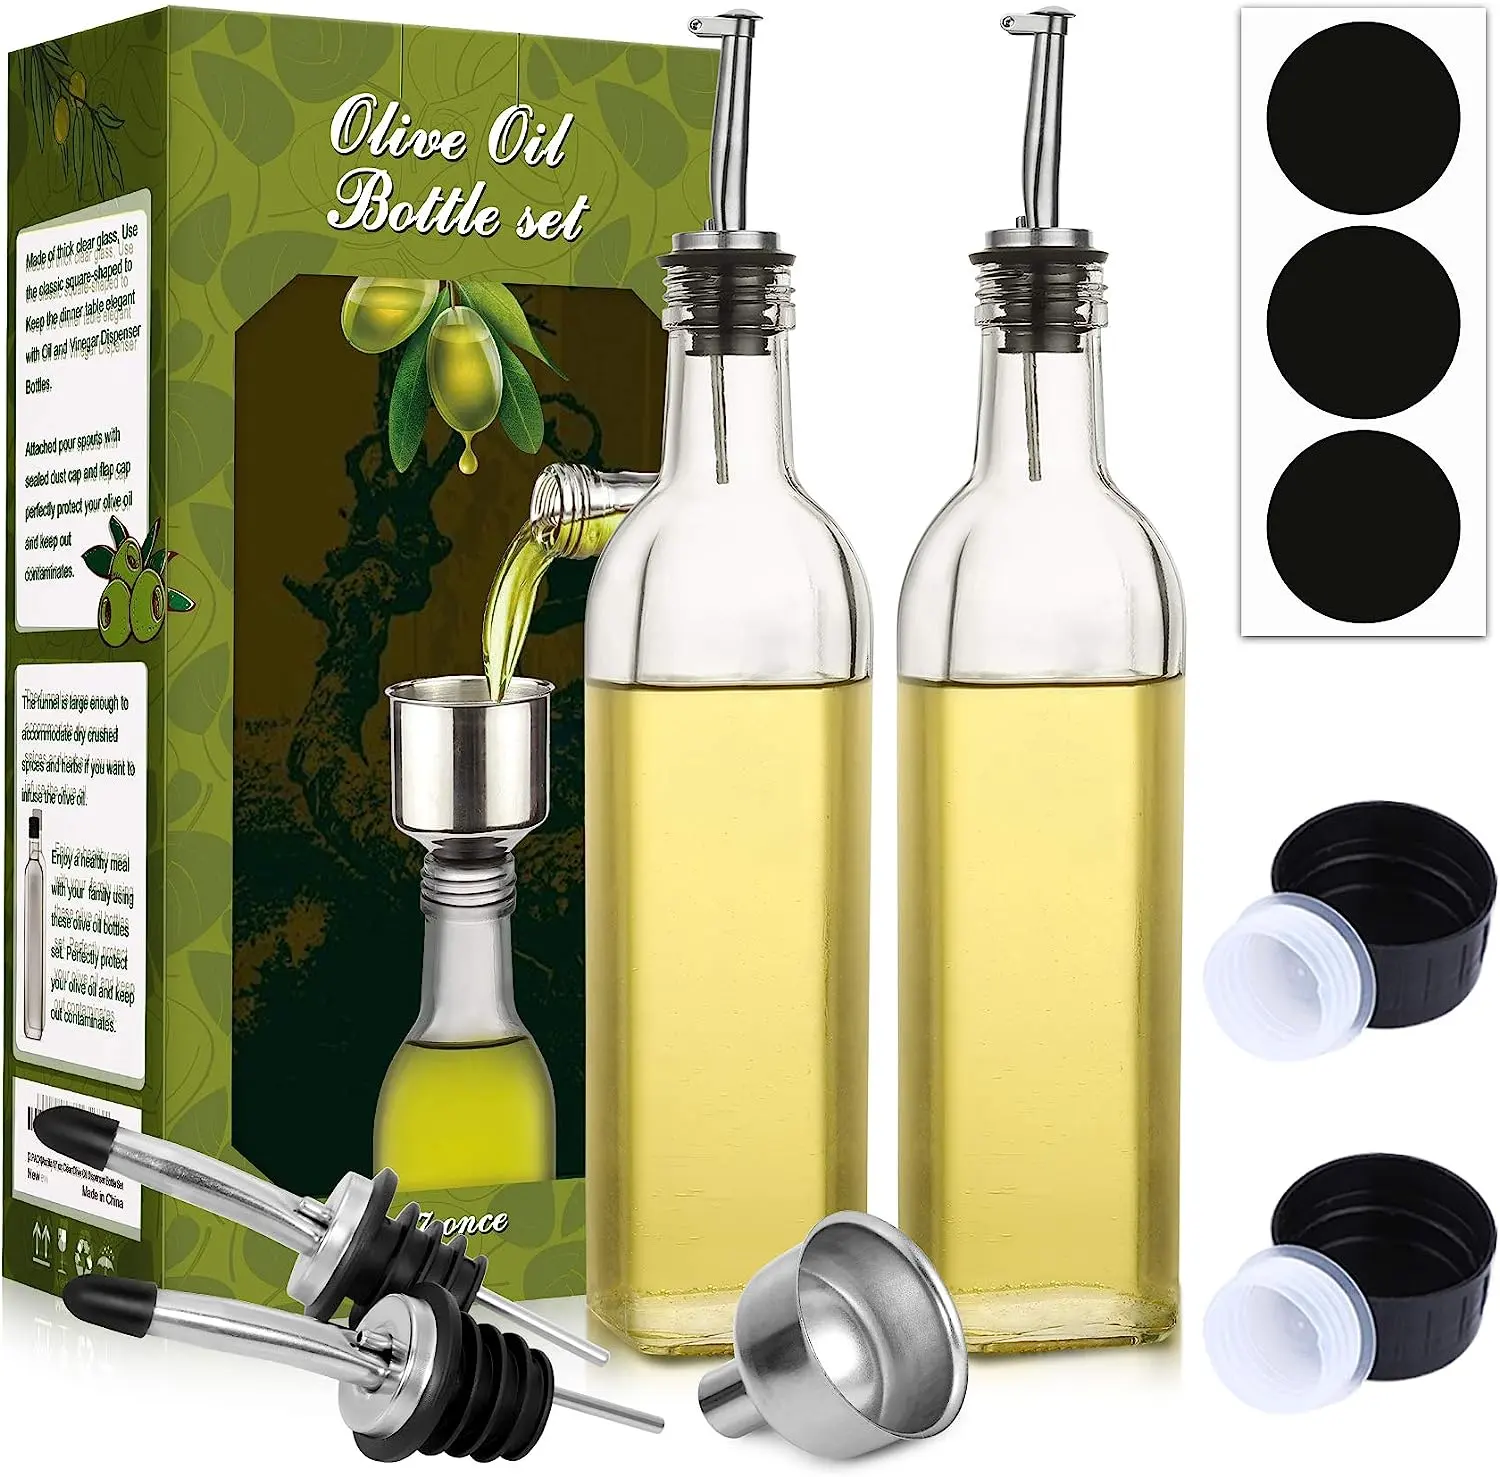 Marasca kotak bening atau hijau, botol kaca minyak zaitun dengan tutup logam, 100ml 250ml 500ml 750ml 1L